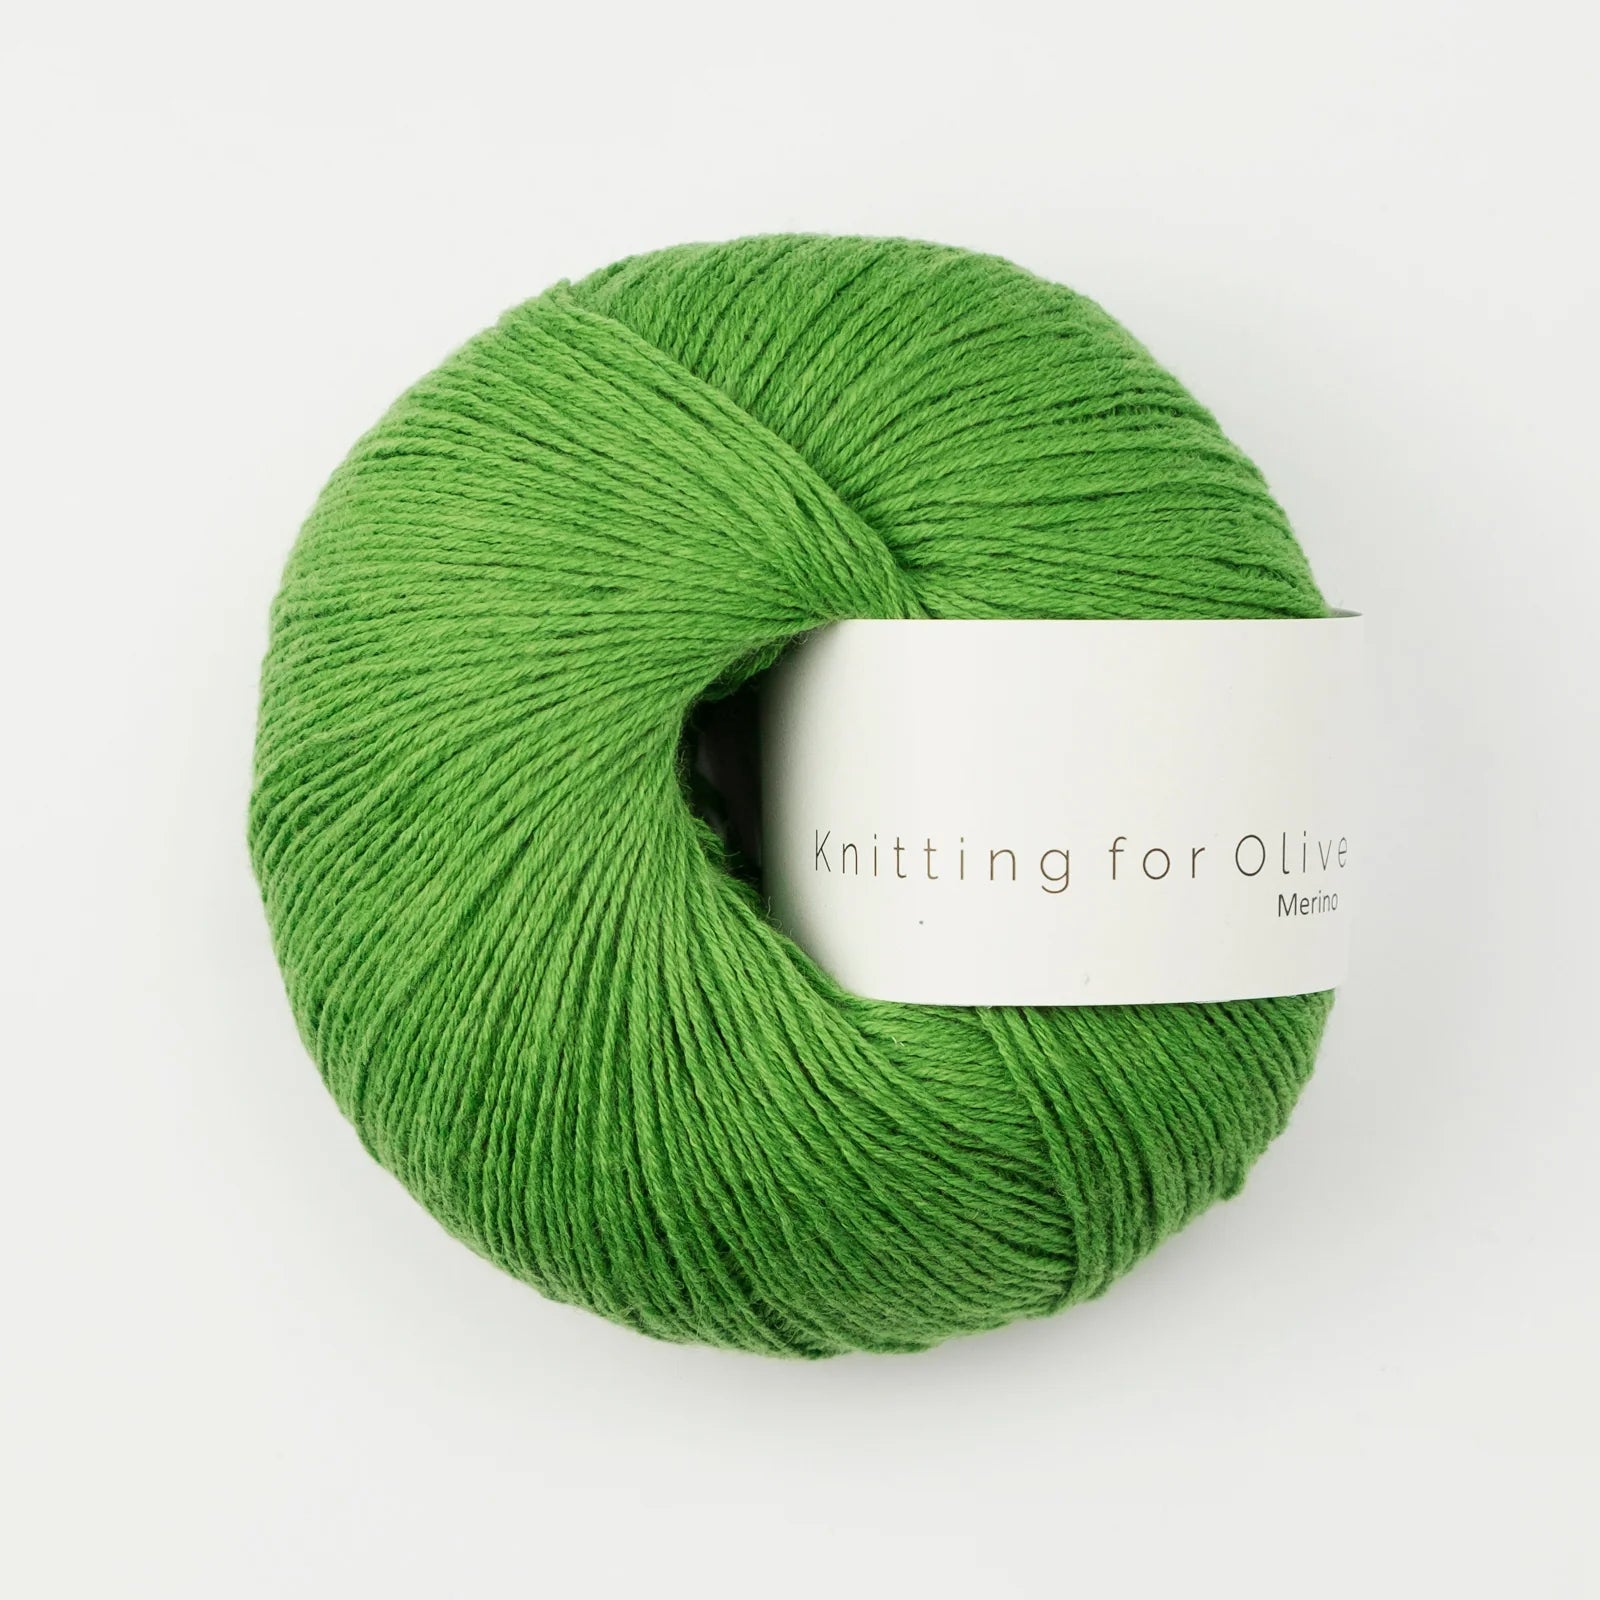 Knitting for Olive Merino - Knitting for Olive - Clover Green - The Little Yarn Store